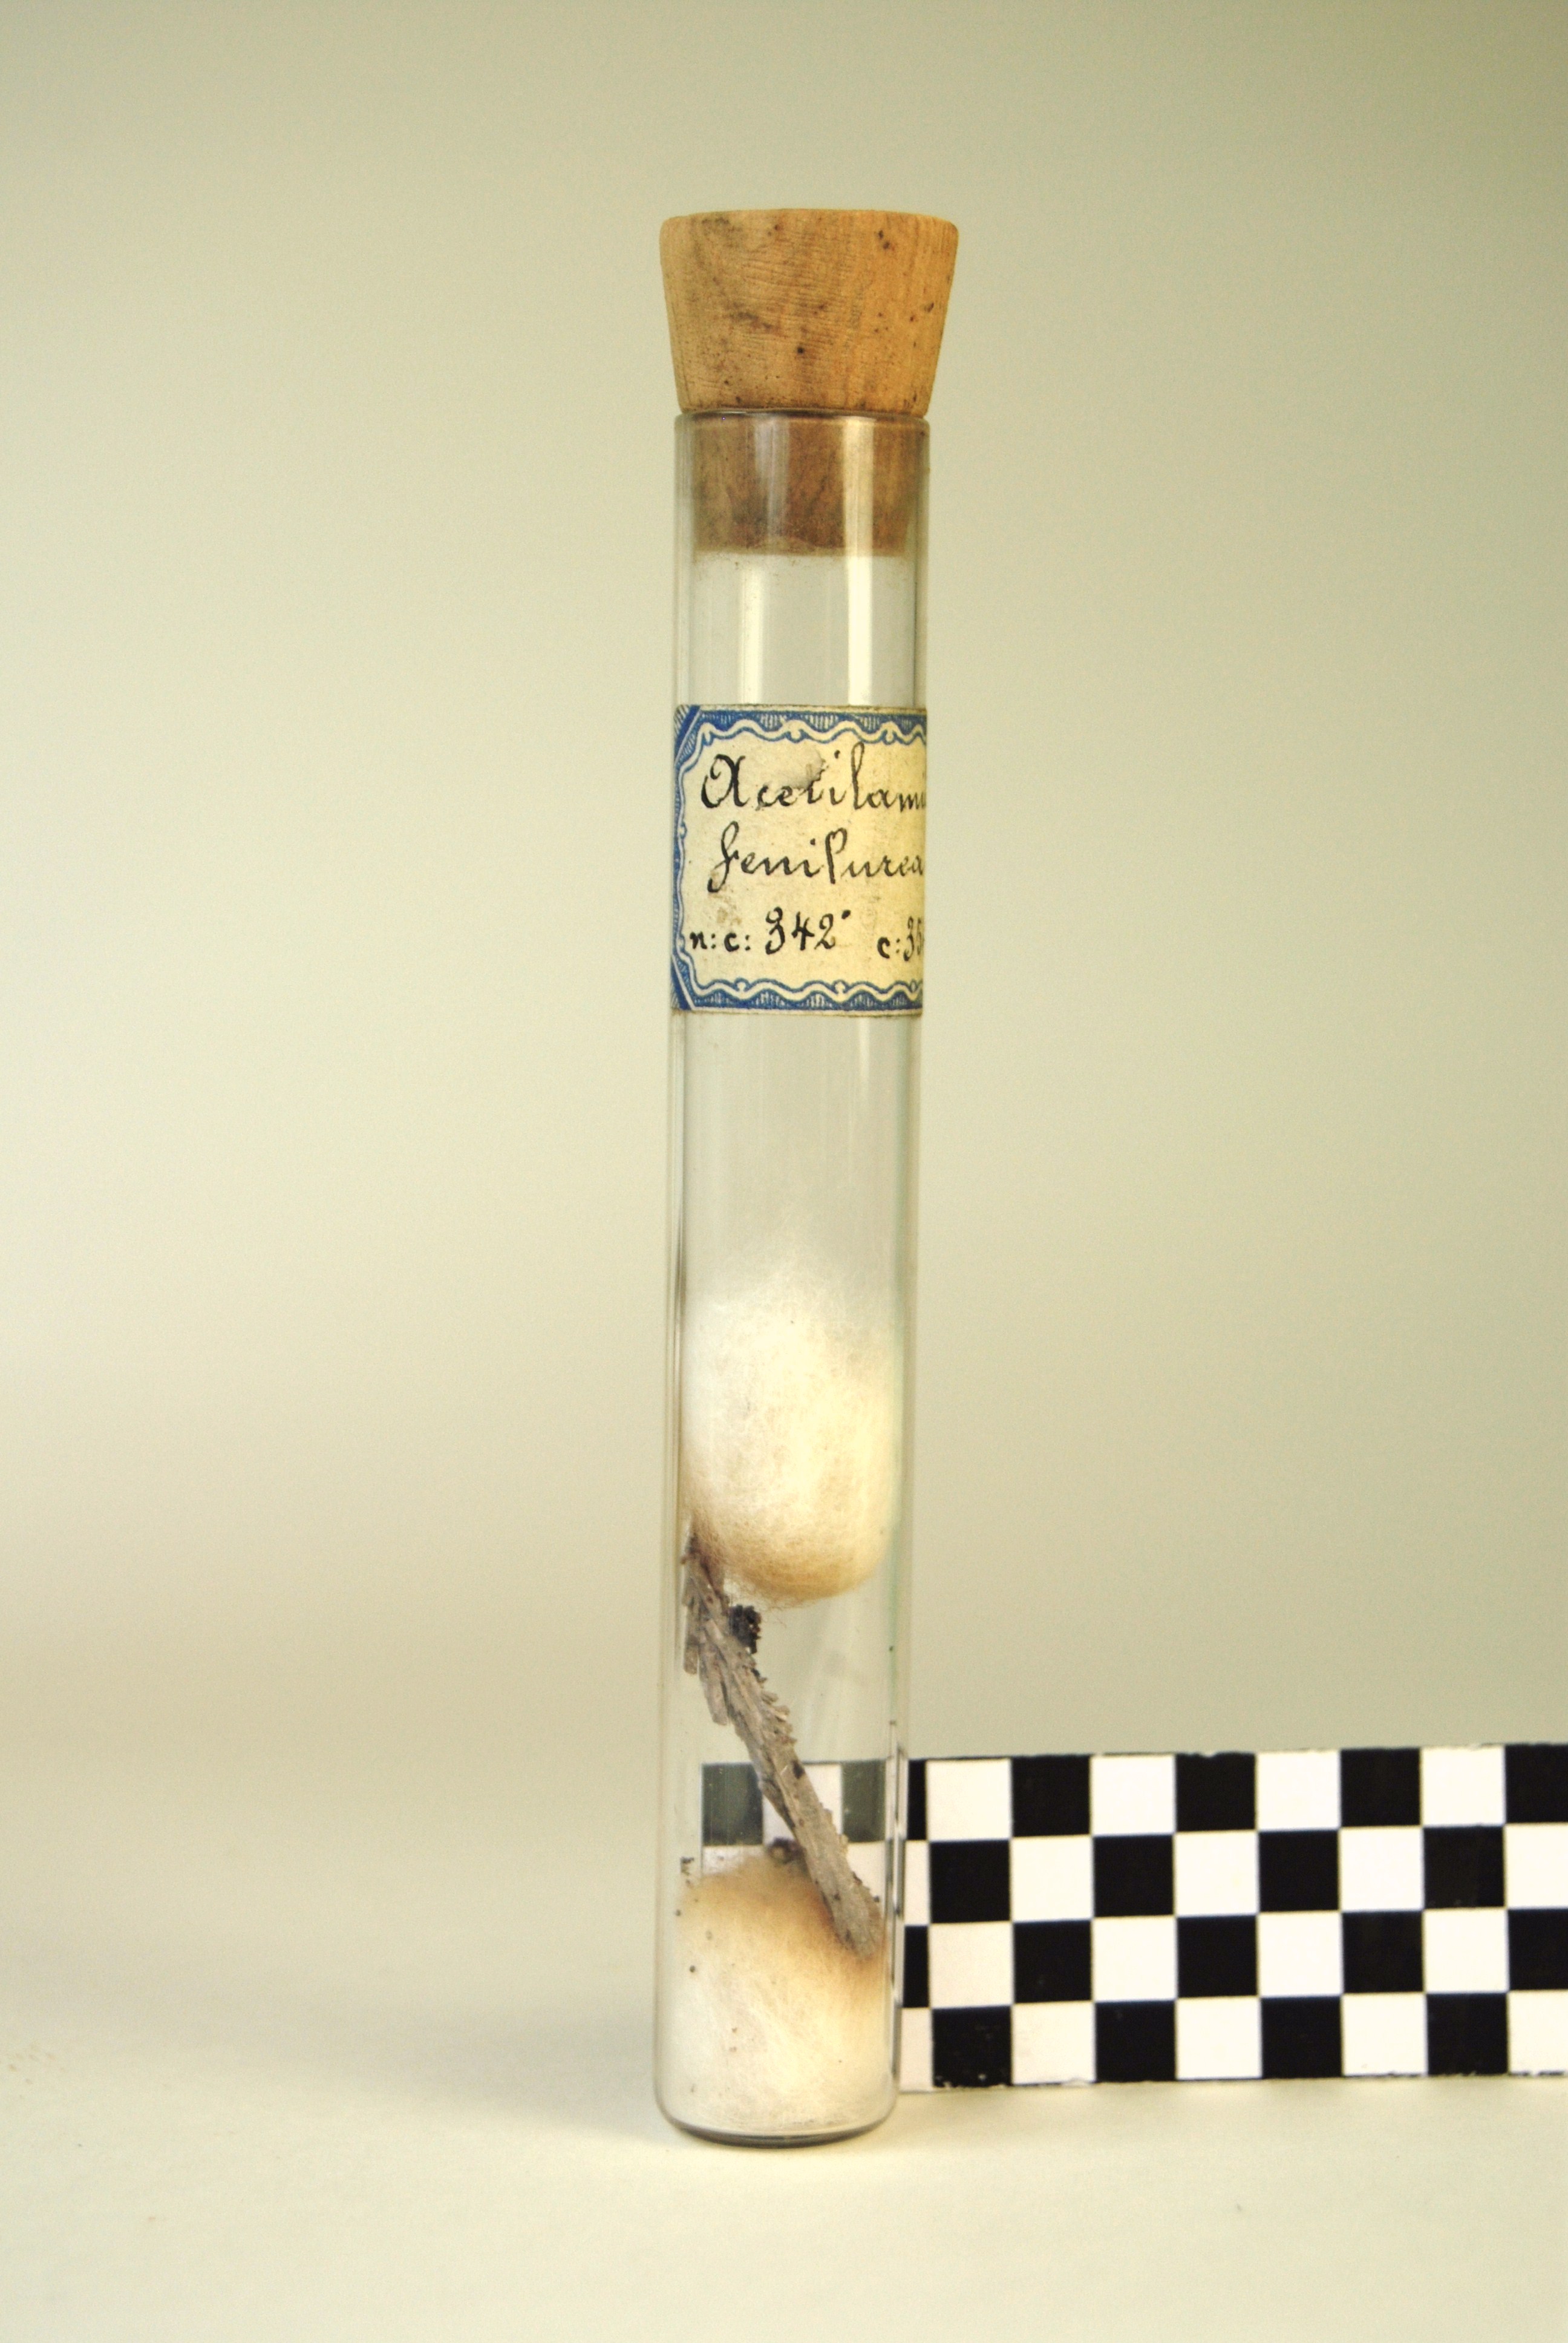 acetilamidofenilurea (prodotto chimico, di sintesi) di Ugo Schiff (laboratorio) - scuola chimica fiorentina (metà/ inizio XIX/ XX)